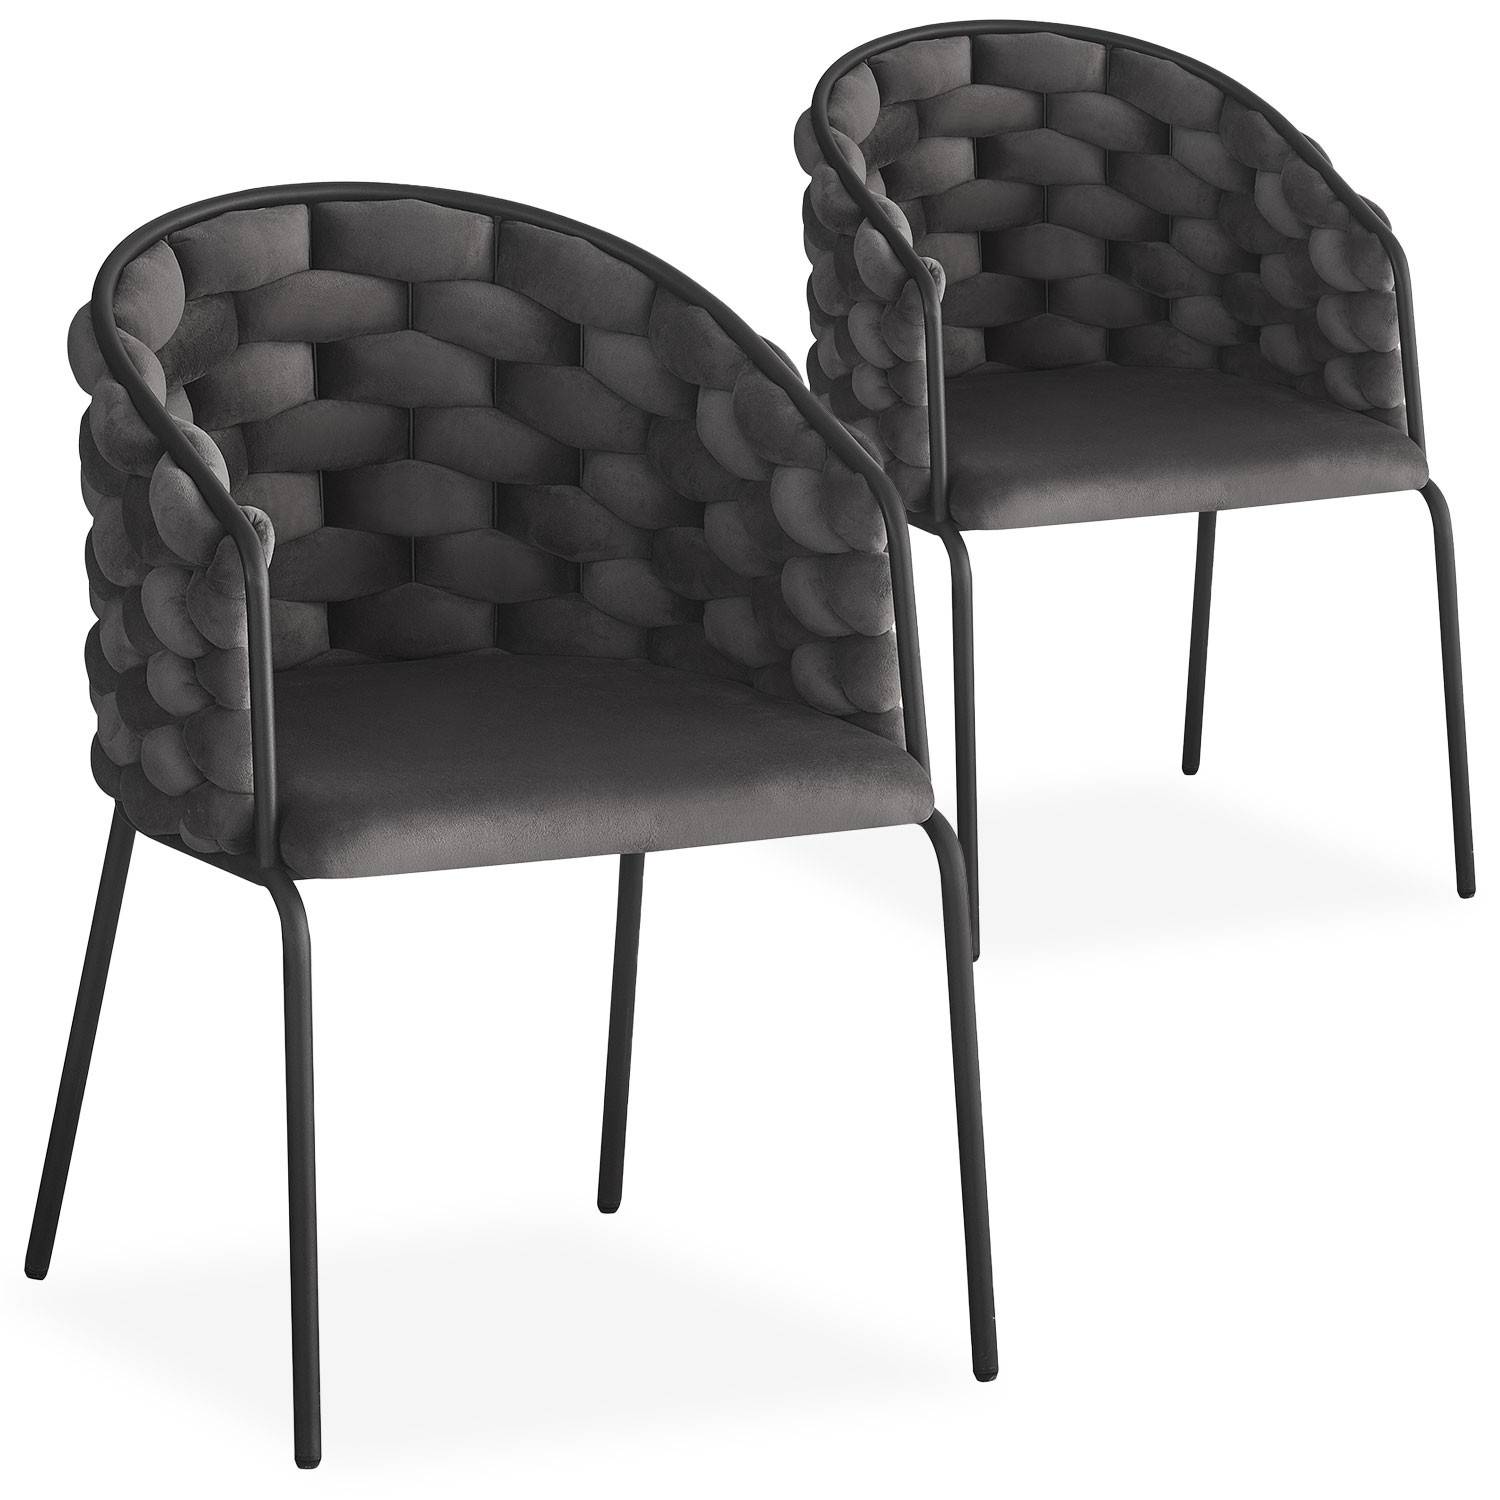 Lote de 2 sillas de terciopelo gris y rejilla metálica negra con respaldo redondeado